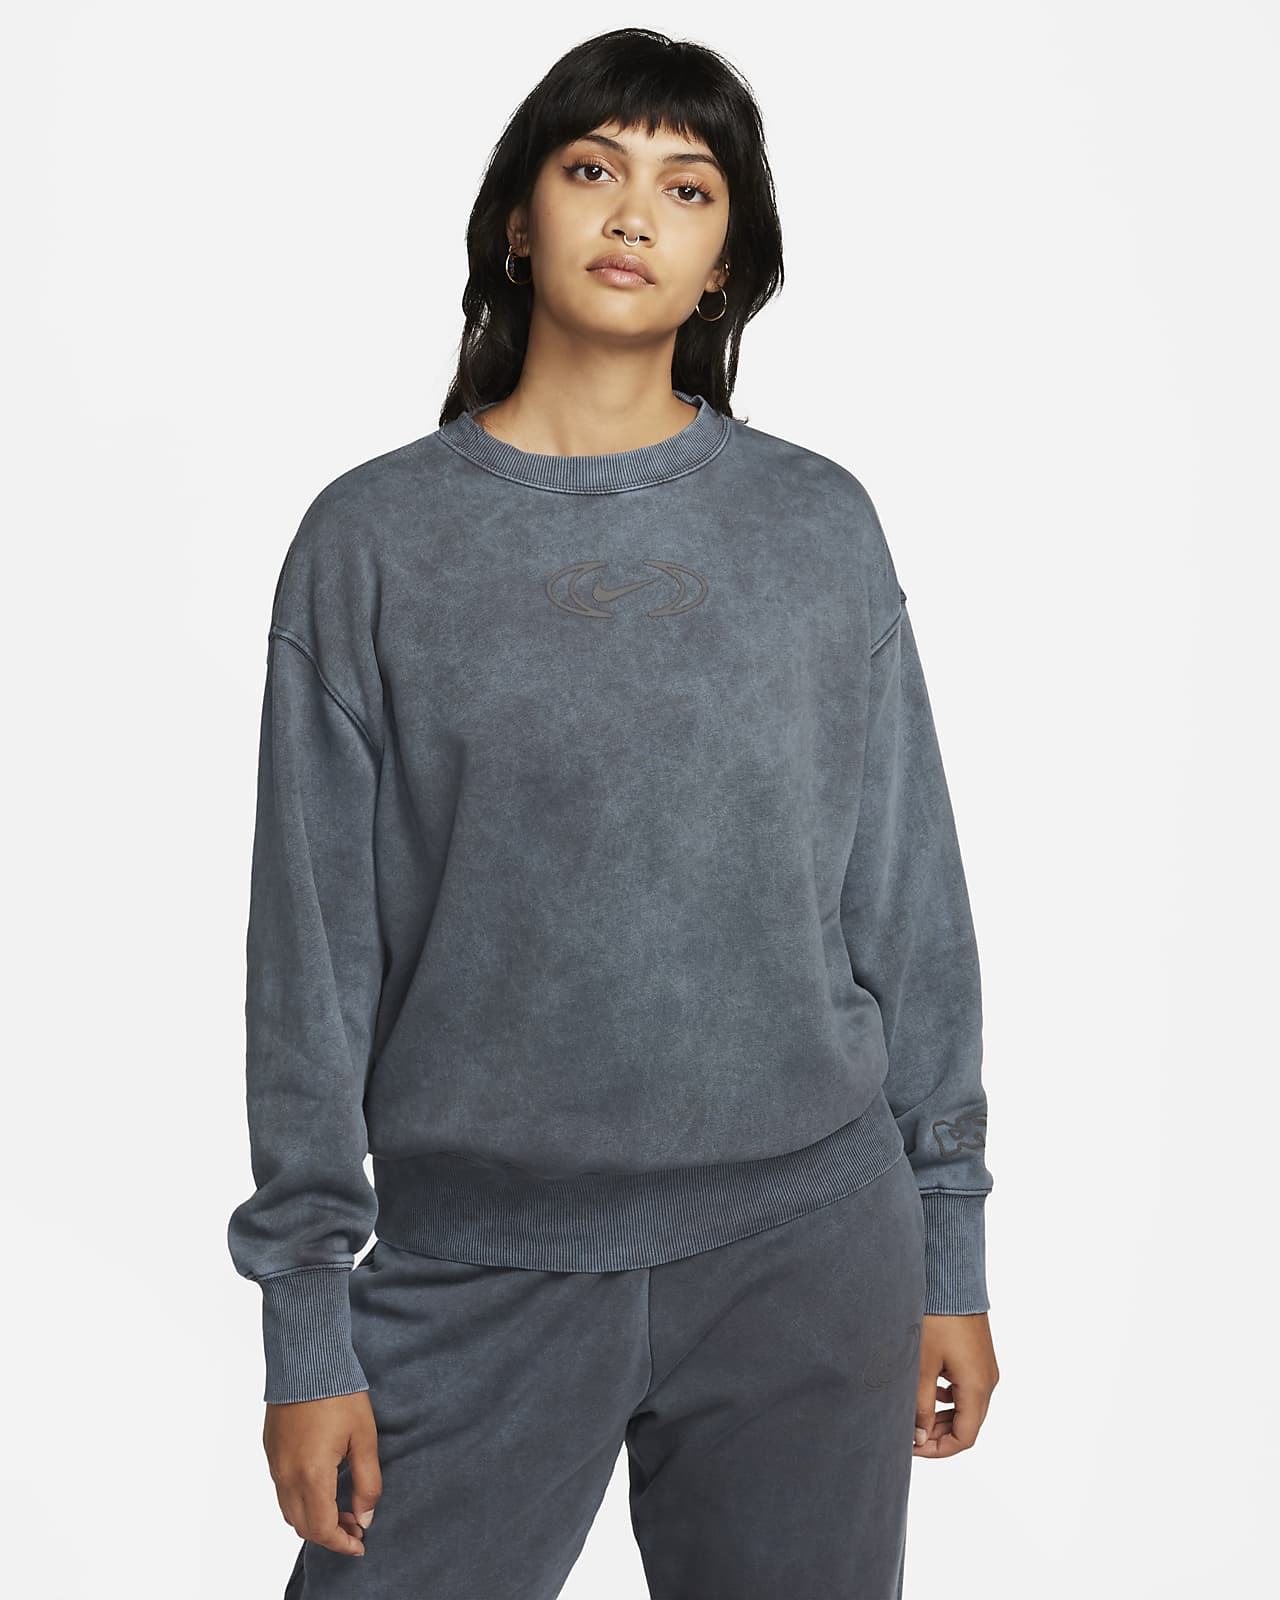 Sweat à capuche ultra-oversize Nike Sportswear Phoenix Fleece pour femme